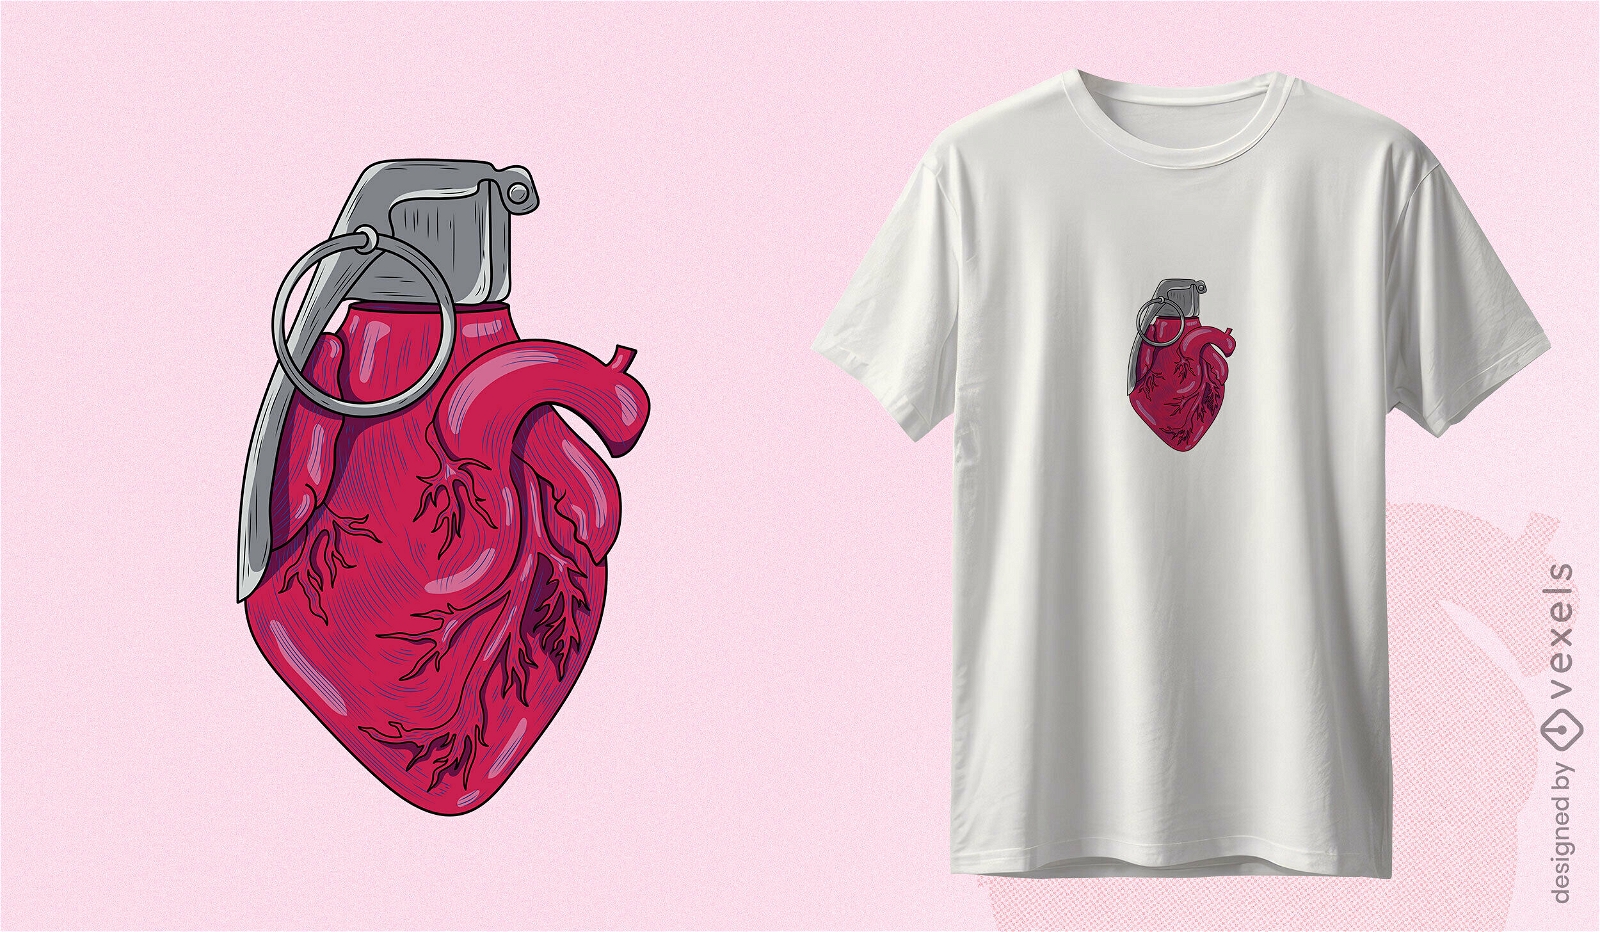 Grenade heart t-shirt design